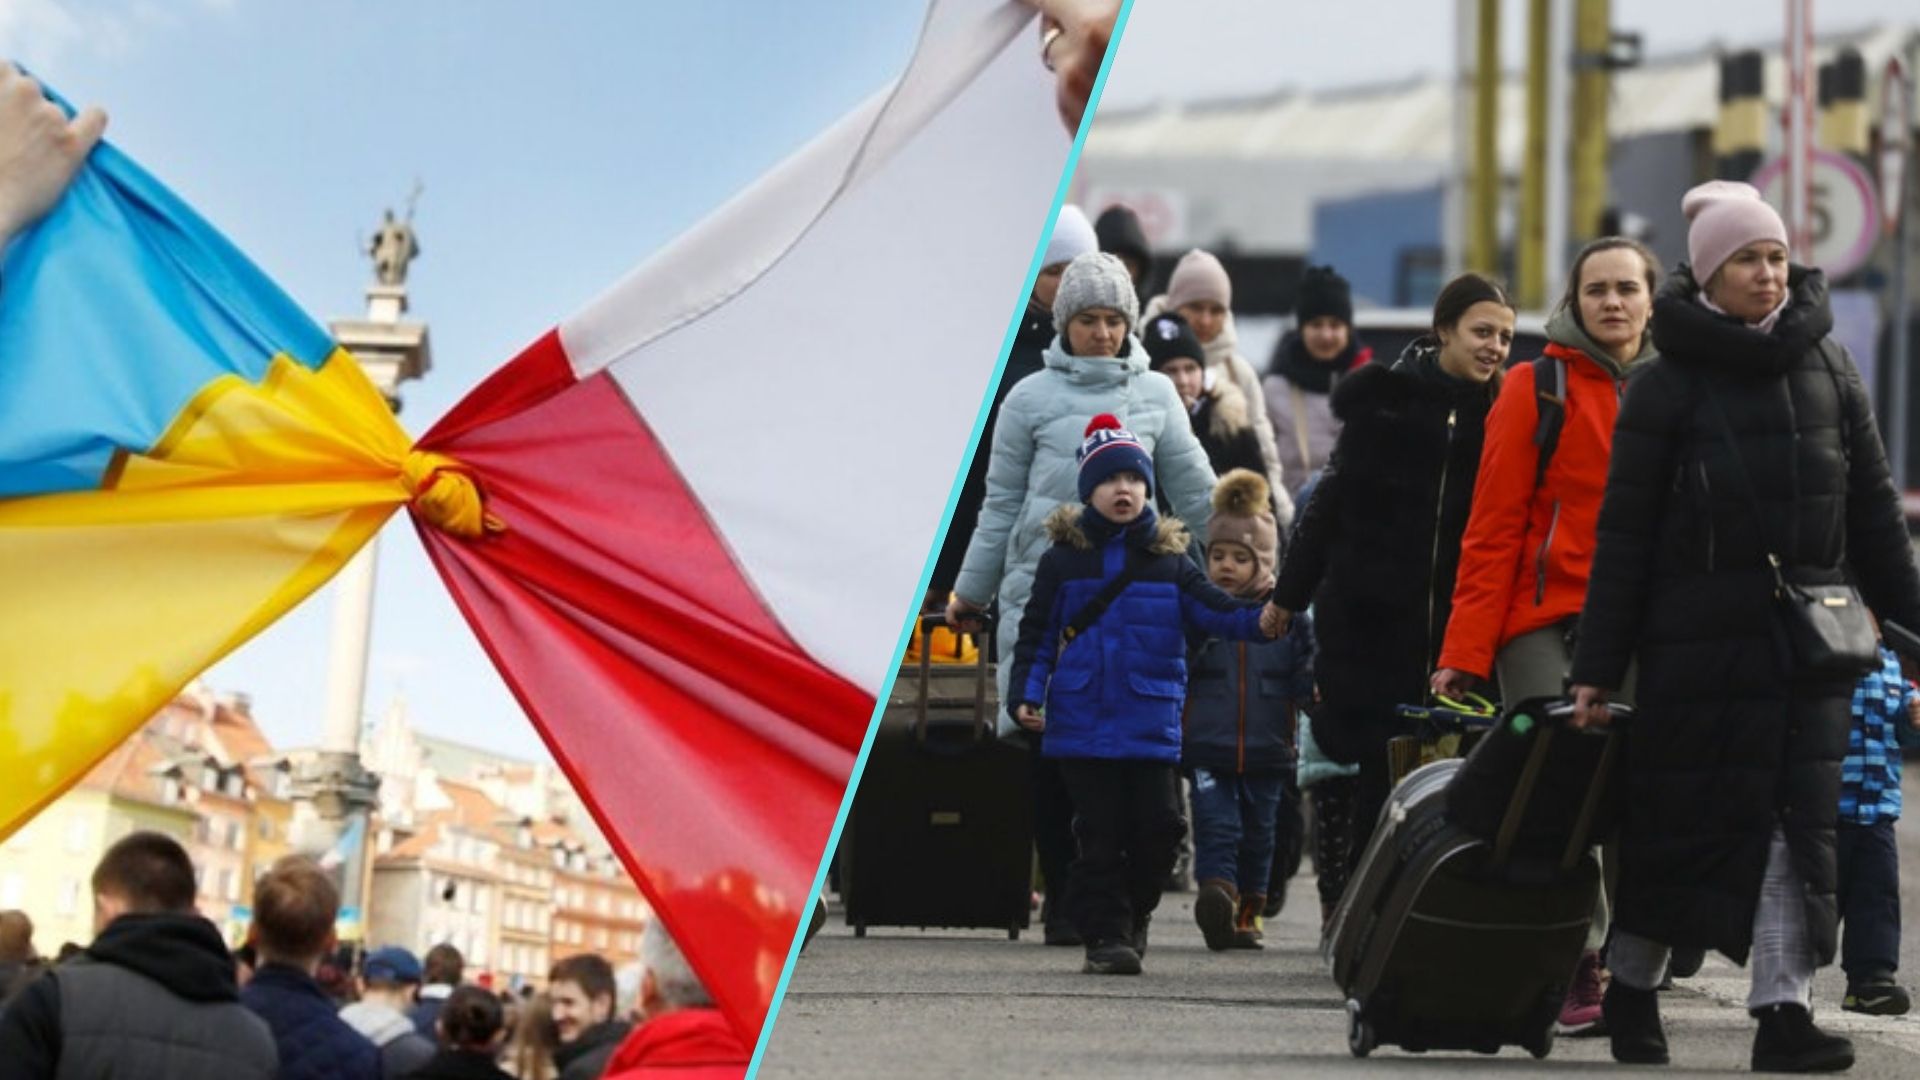 Польща остаточно втратила першість серед країн Європи за кількістю українських біженців. Новим лідером стала Німеччина, багато в чому саме за рахунок переїзду туди українців із Польщі.